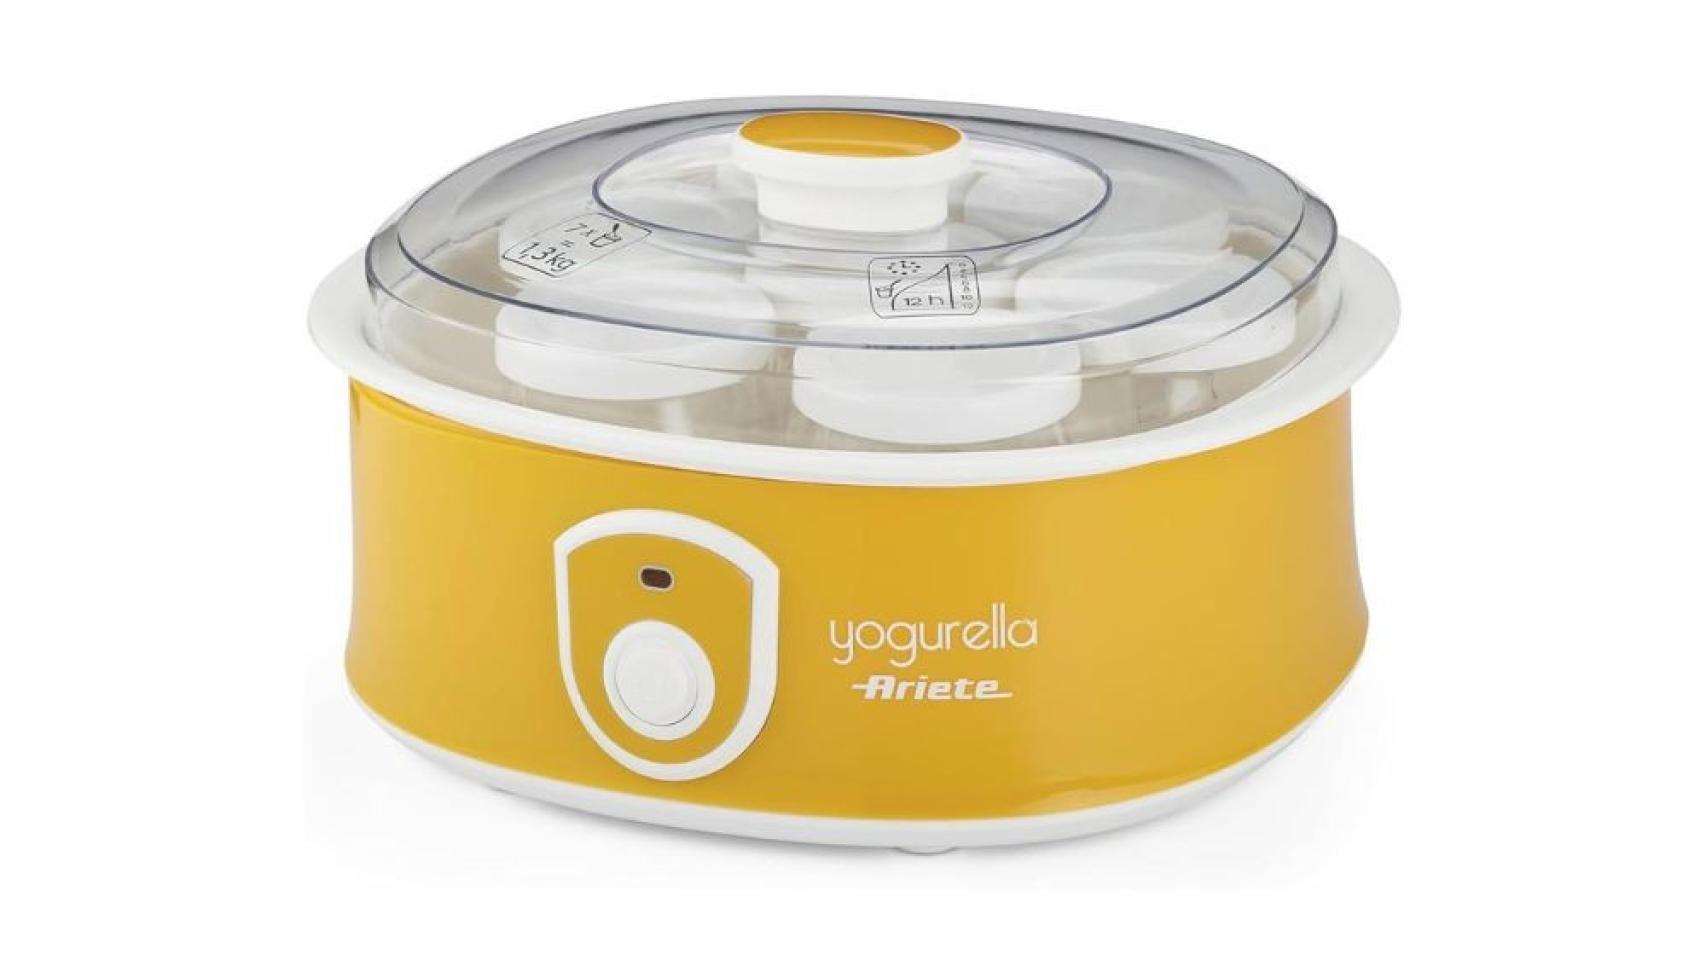 Las 6 mejores yogurteras para preparar tu propio yogur